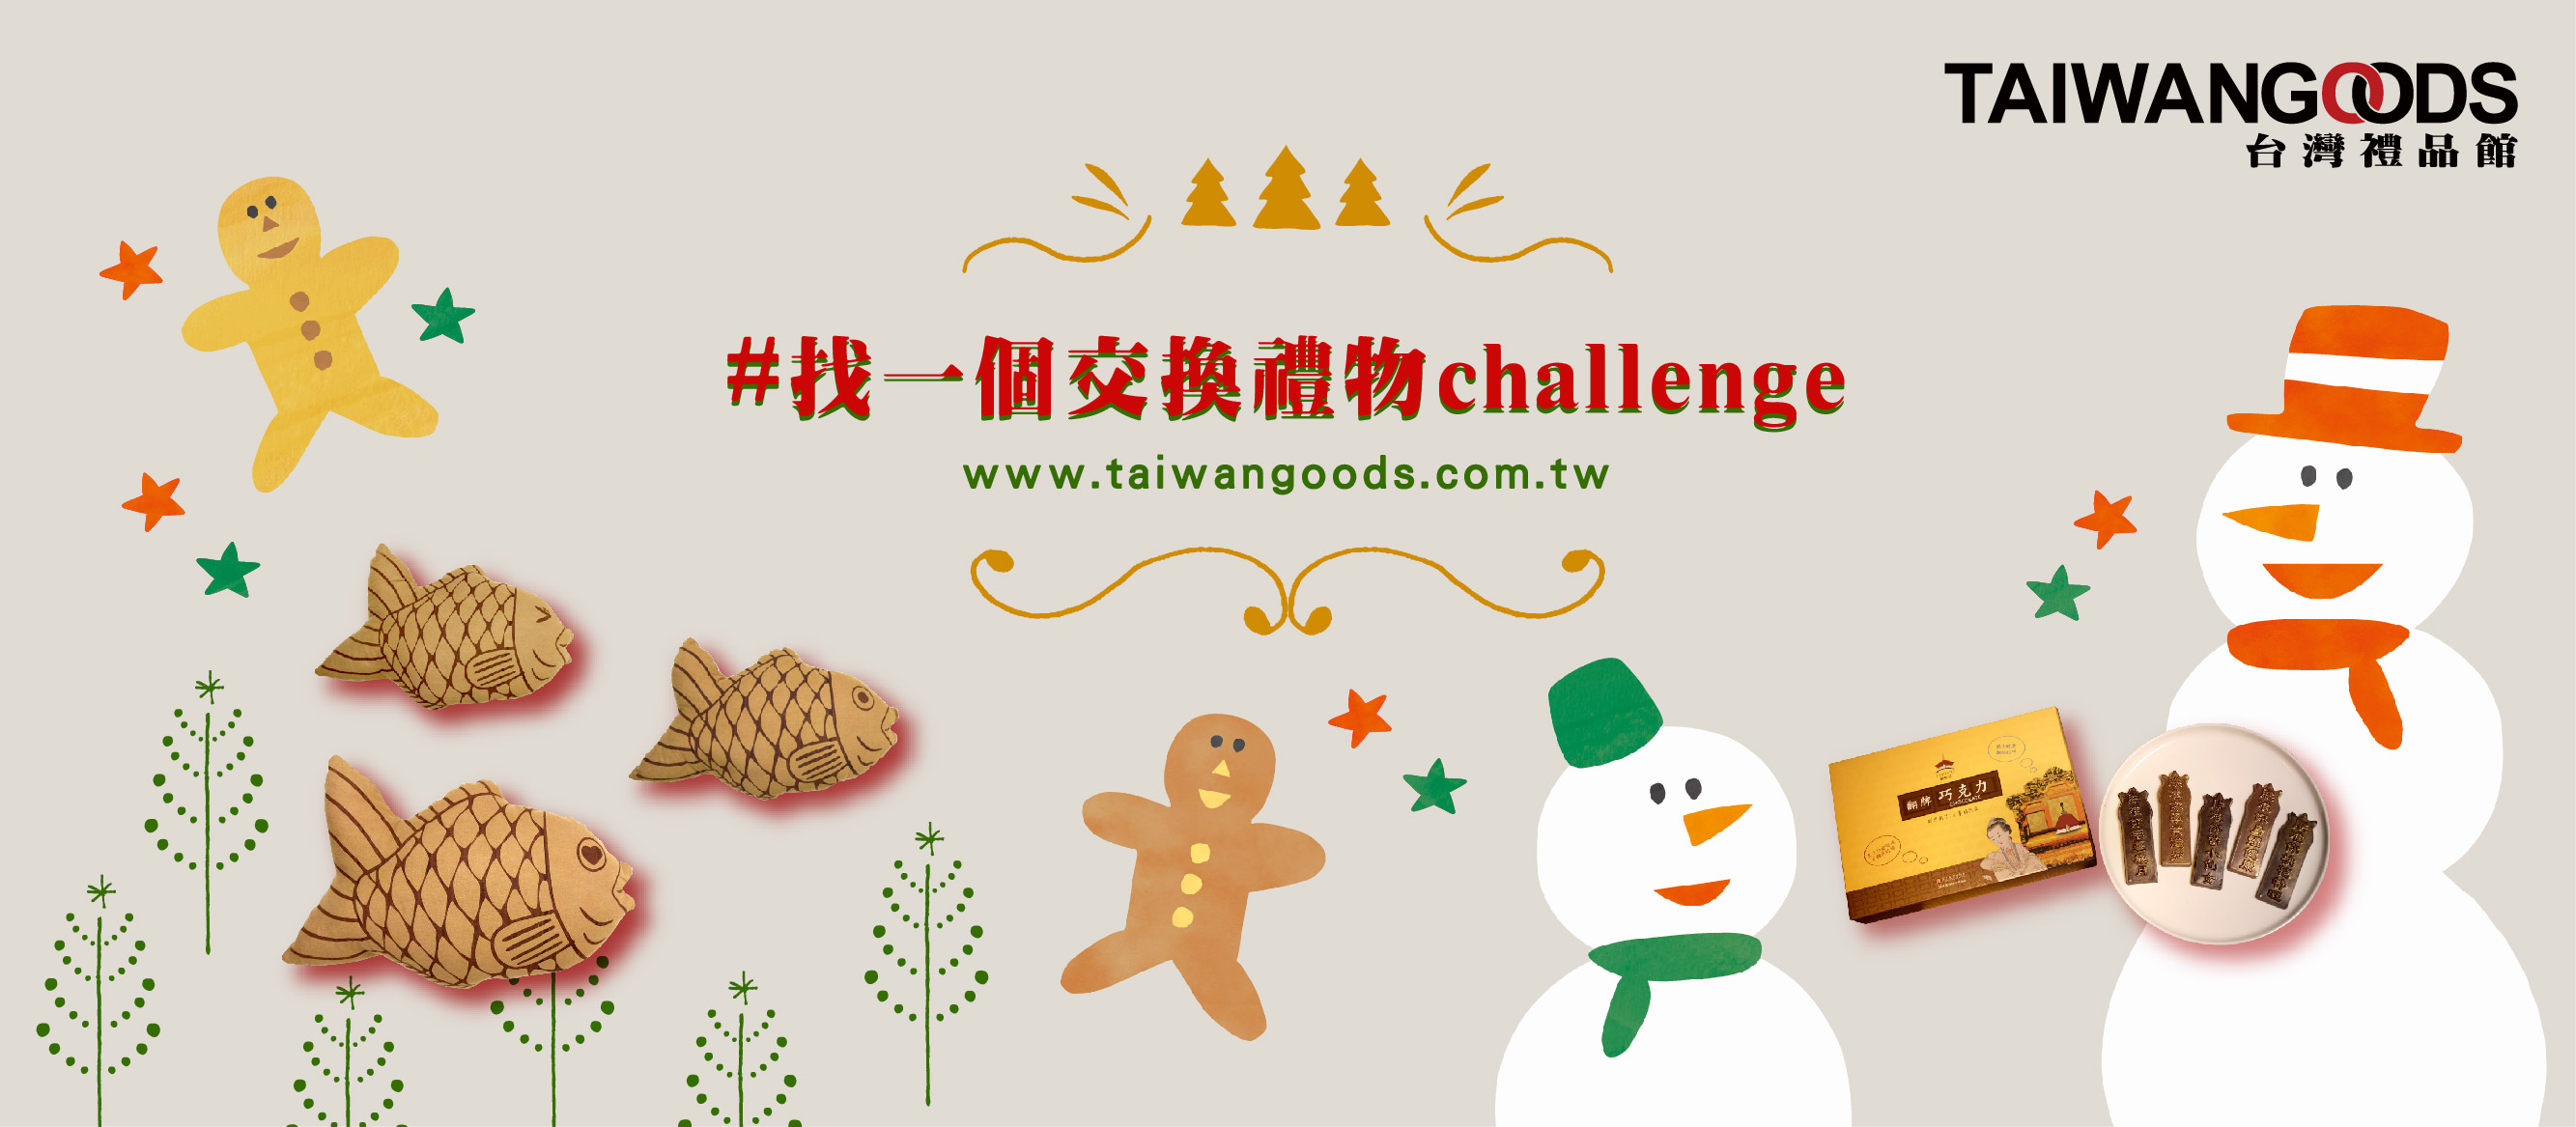 找一個交換禮物challenge 聖誕節耶誕節挑禮物推薦